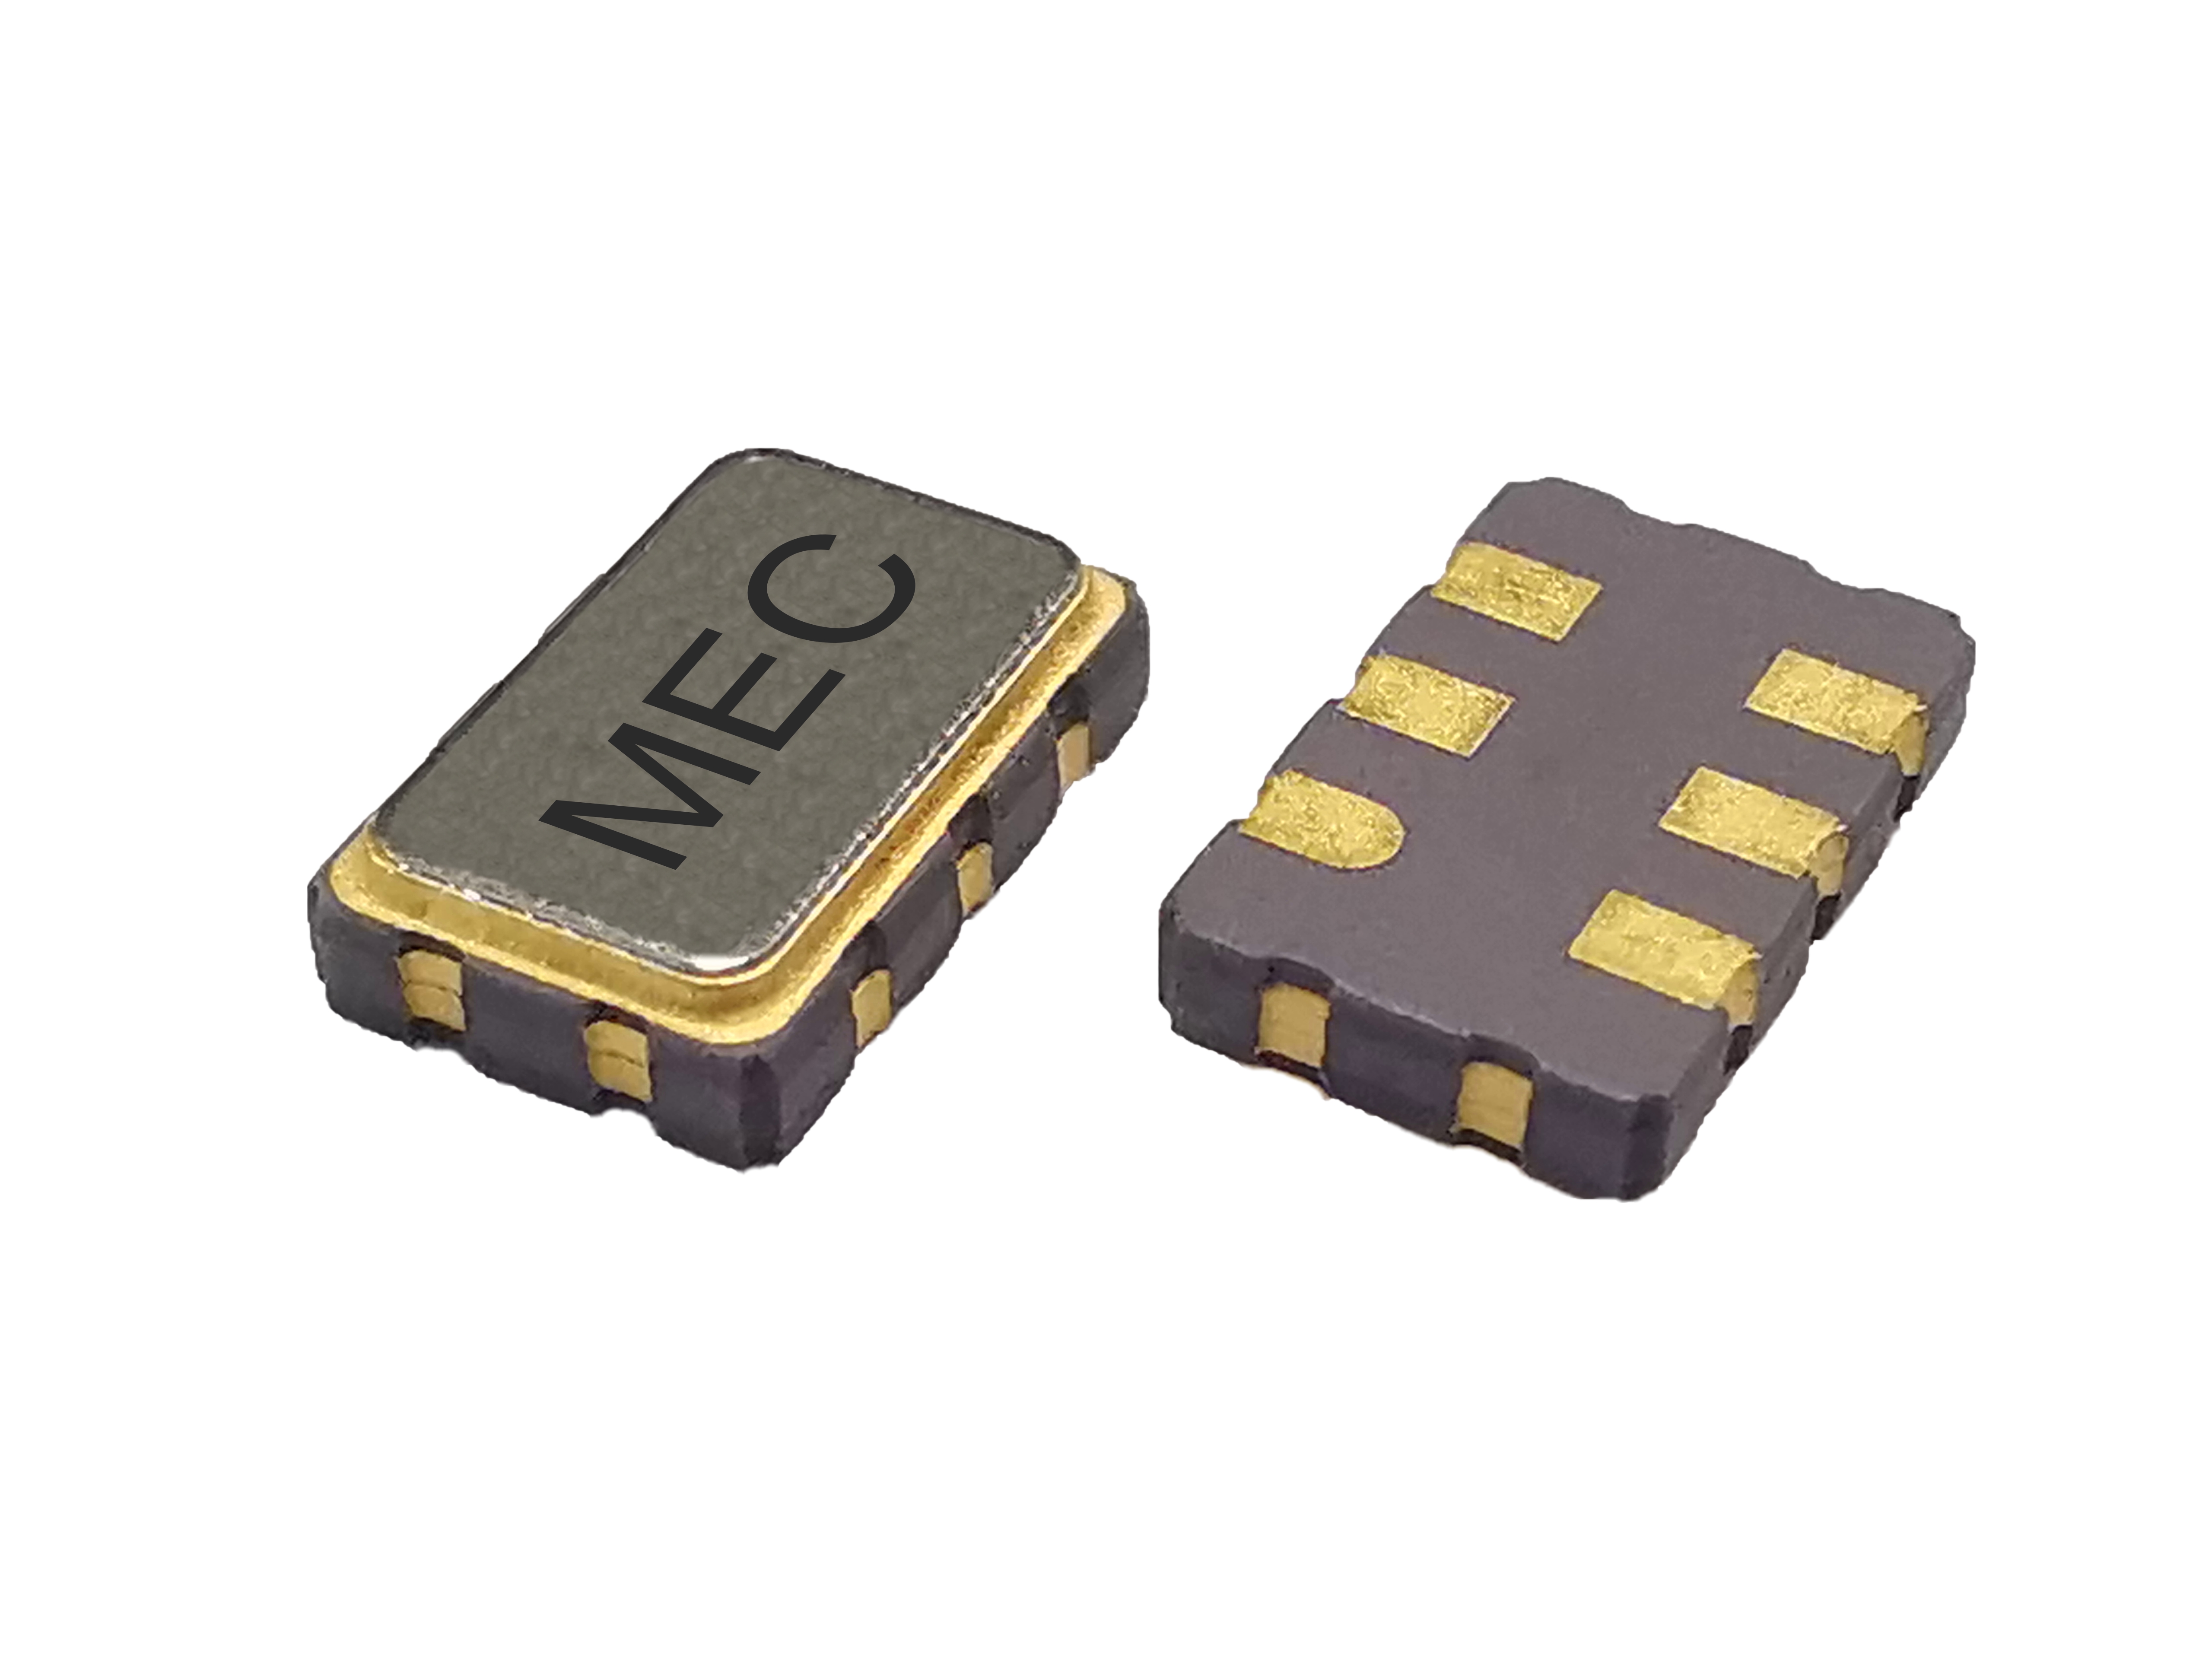 HTQN536 5032 3.3V Low Jitter CMOS SMD Crystal Oscillator